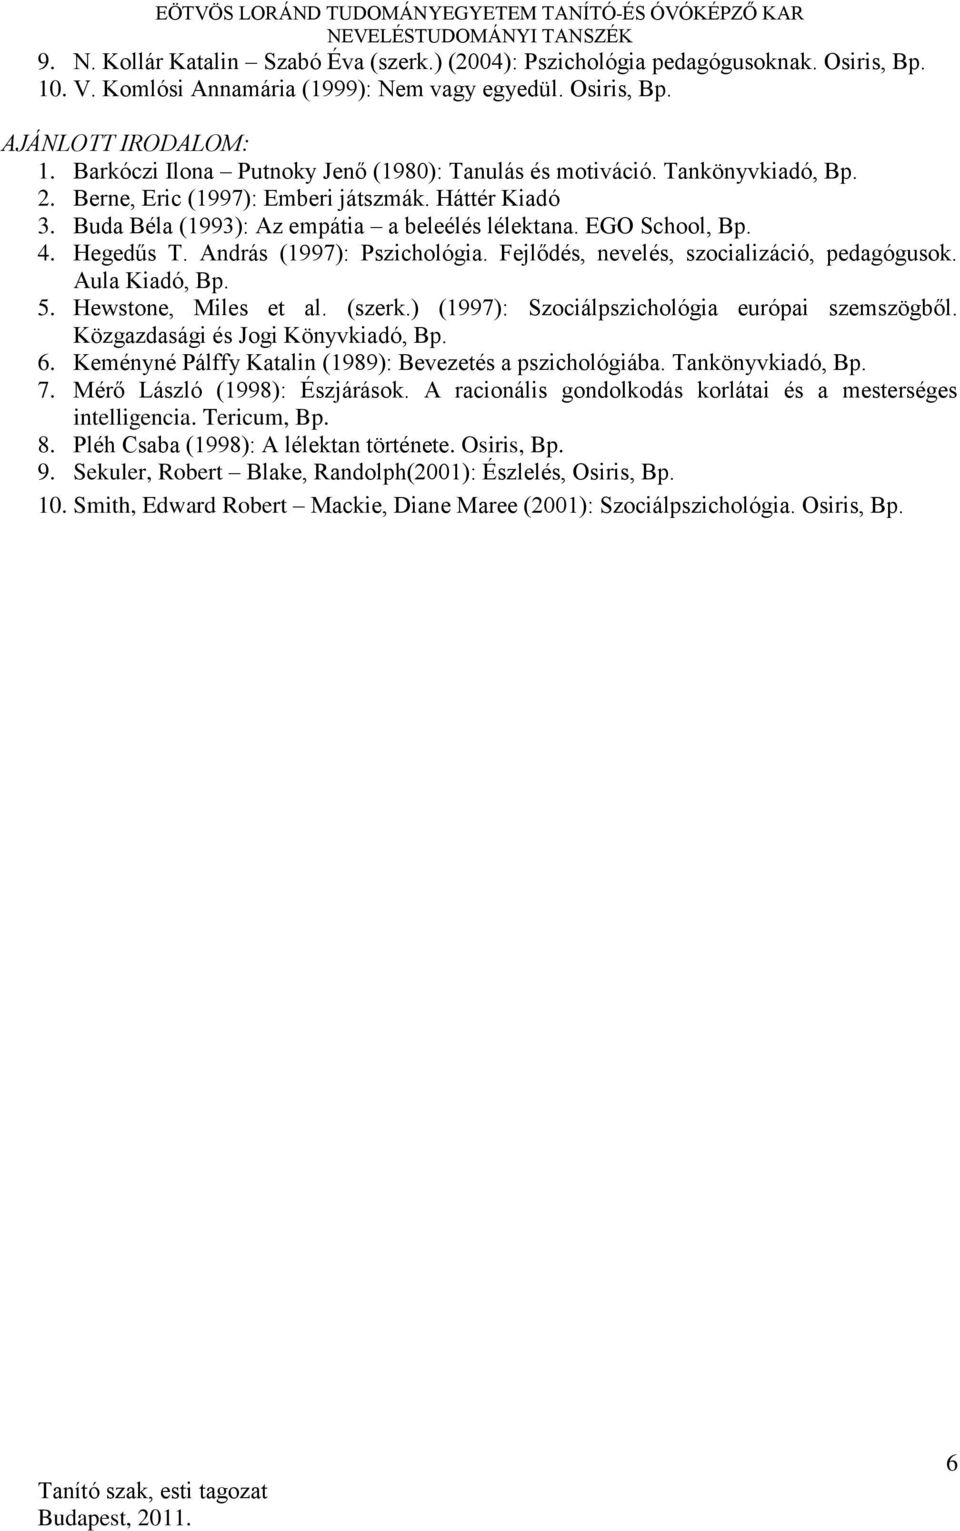 4. Hegedűs T. András (1997): Pszichológia. Fejlődés, nevelés, szocializáció, pedagógusok. Aula Kiadó, Bp. 5. Hewstone, Miles et al. (szerk.) (1997): Szociálpszichológia európai szemszögből.